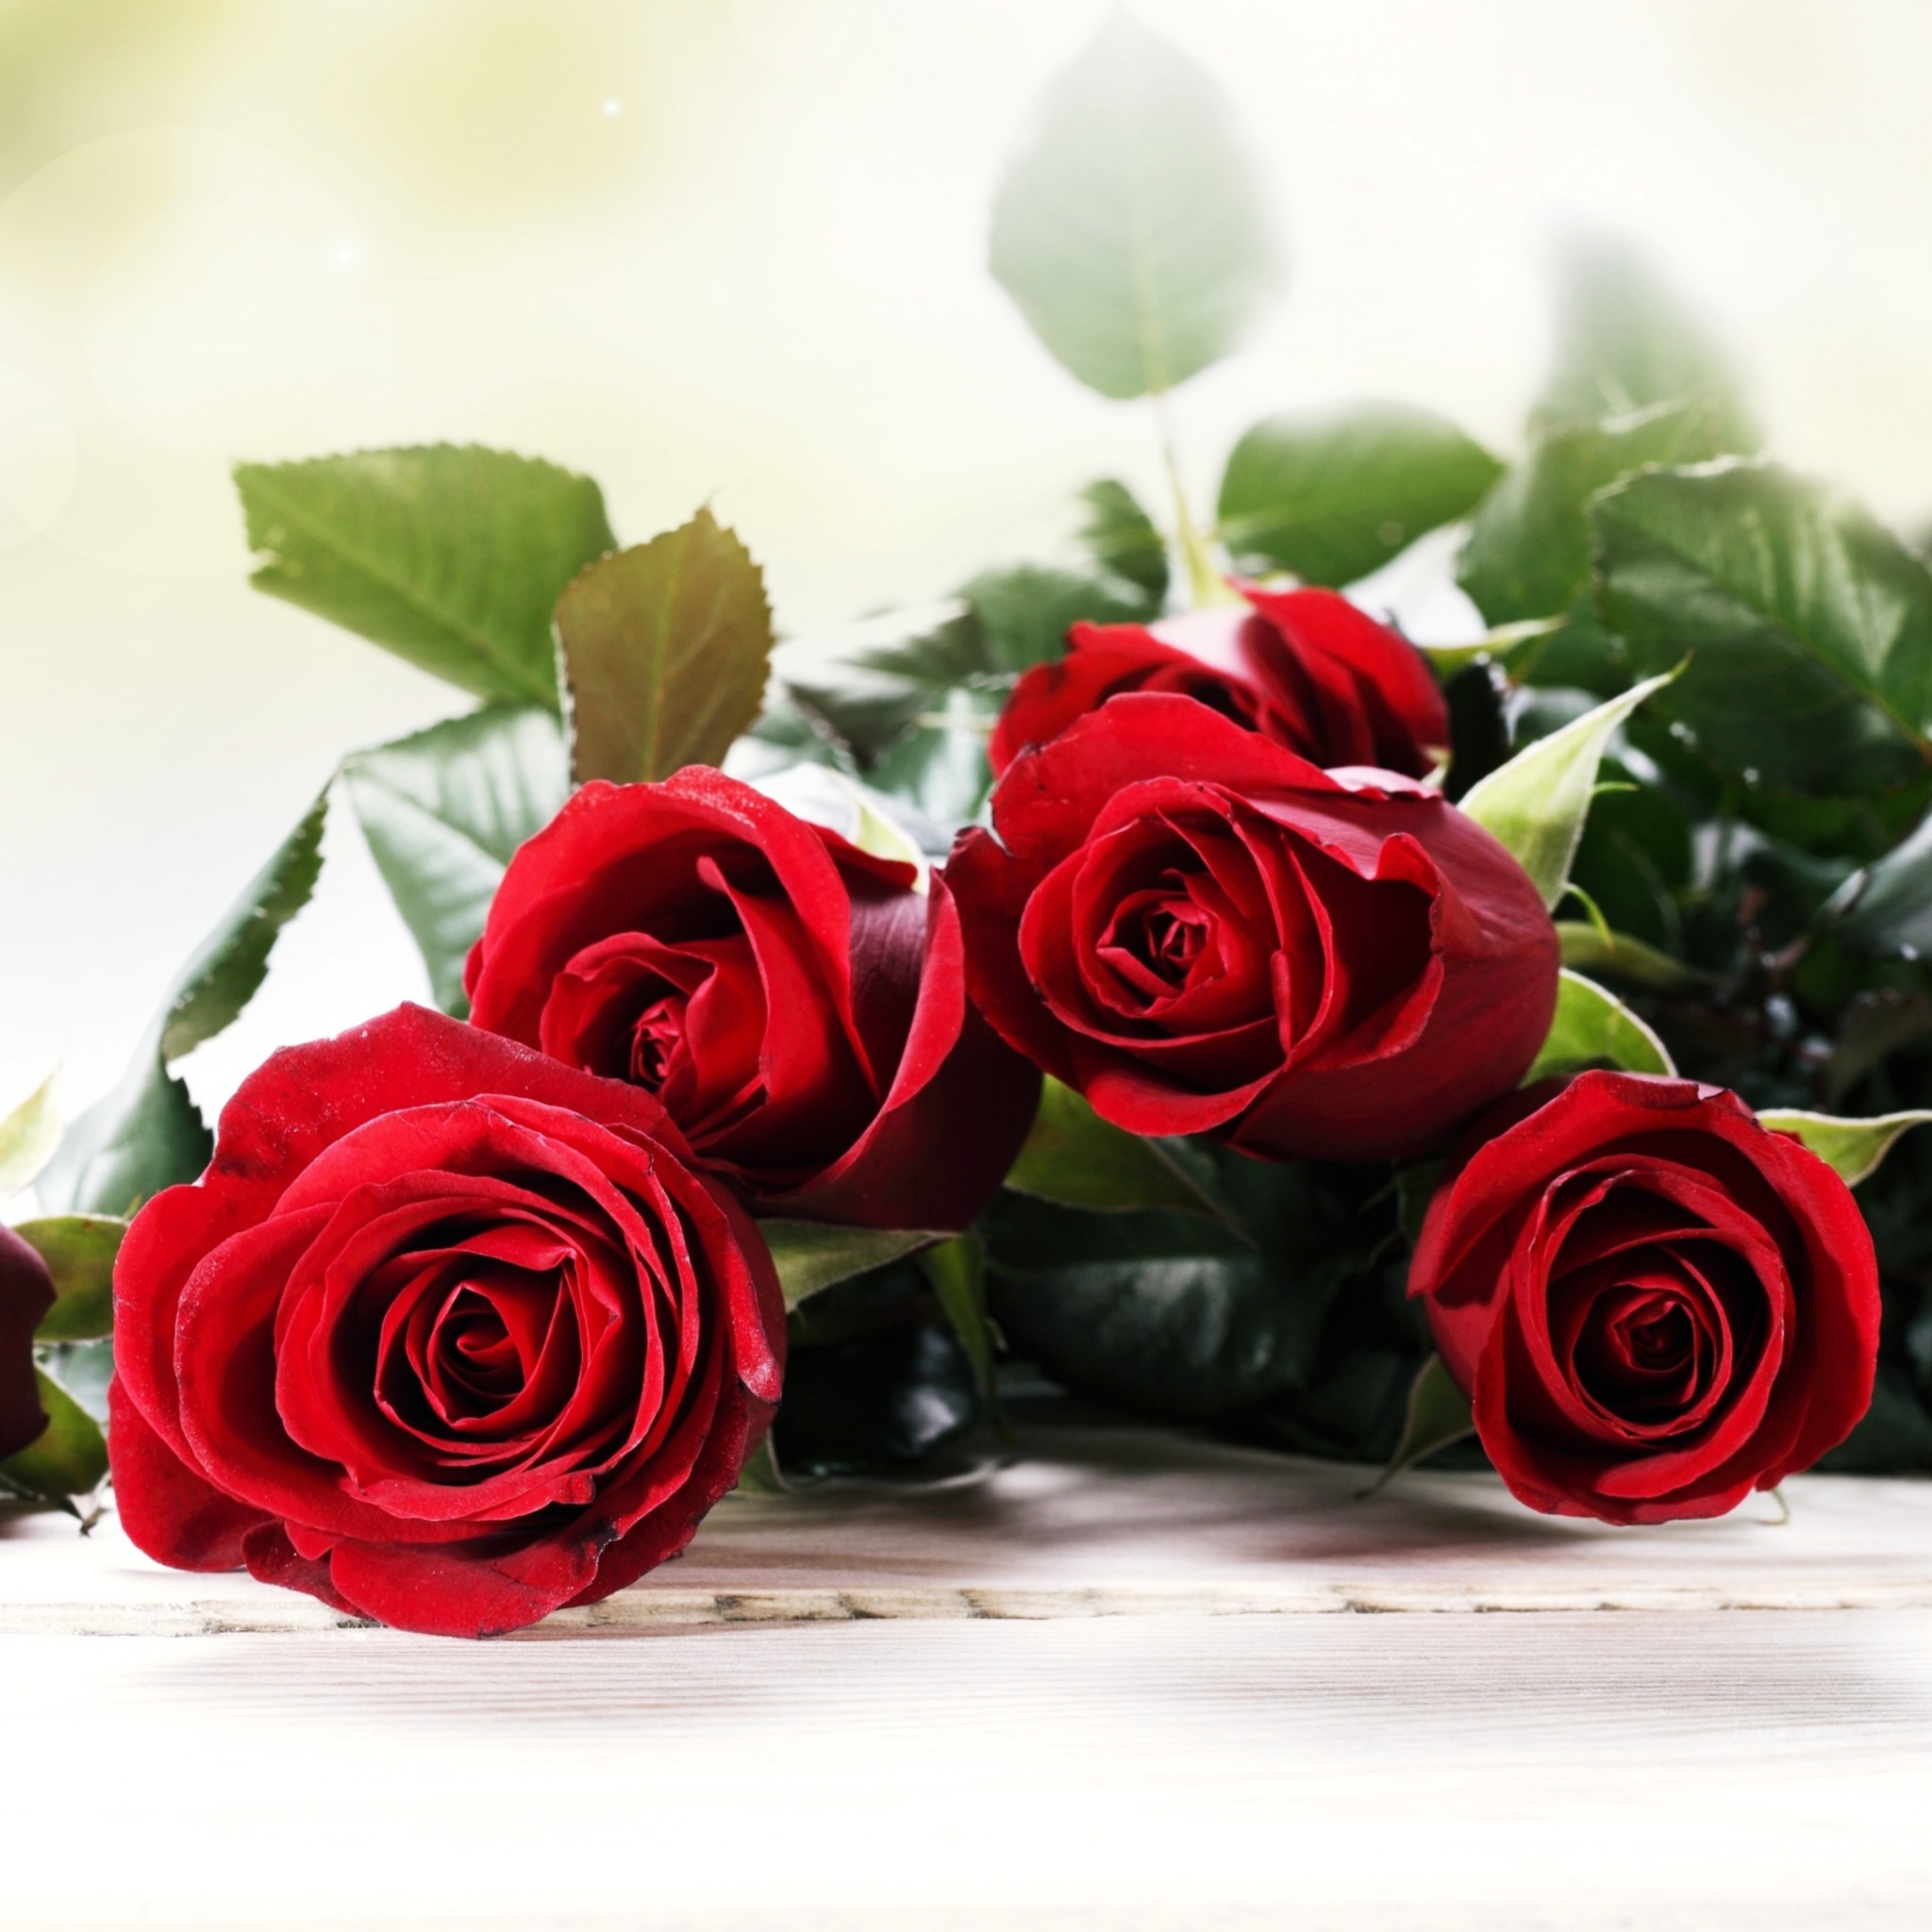 Скачать обои бесплатно Любовь, Цветок, Роза, Букет, Красная Роза, Красный Цветок, Земля/природа, Флауэрсы картинка на рабочий стол ПК